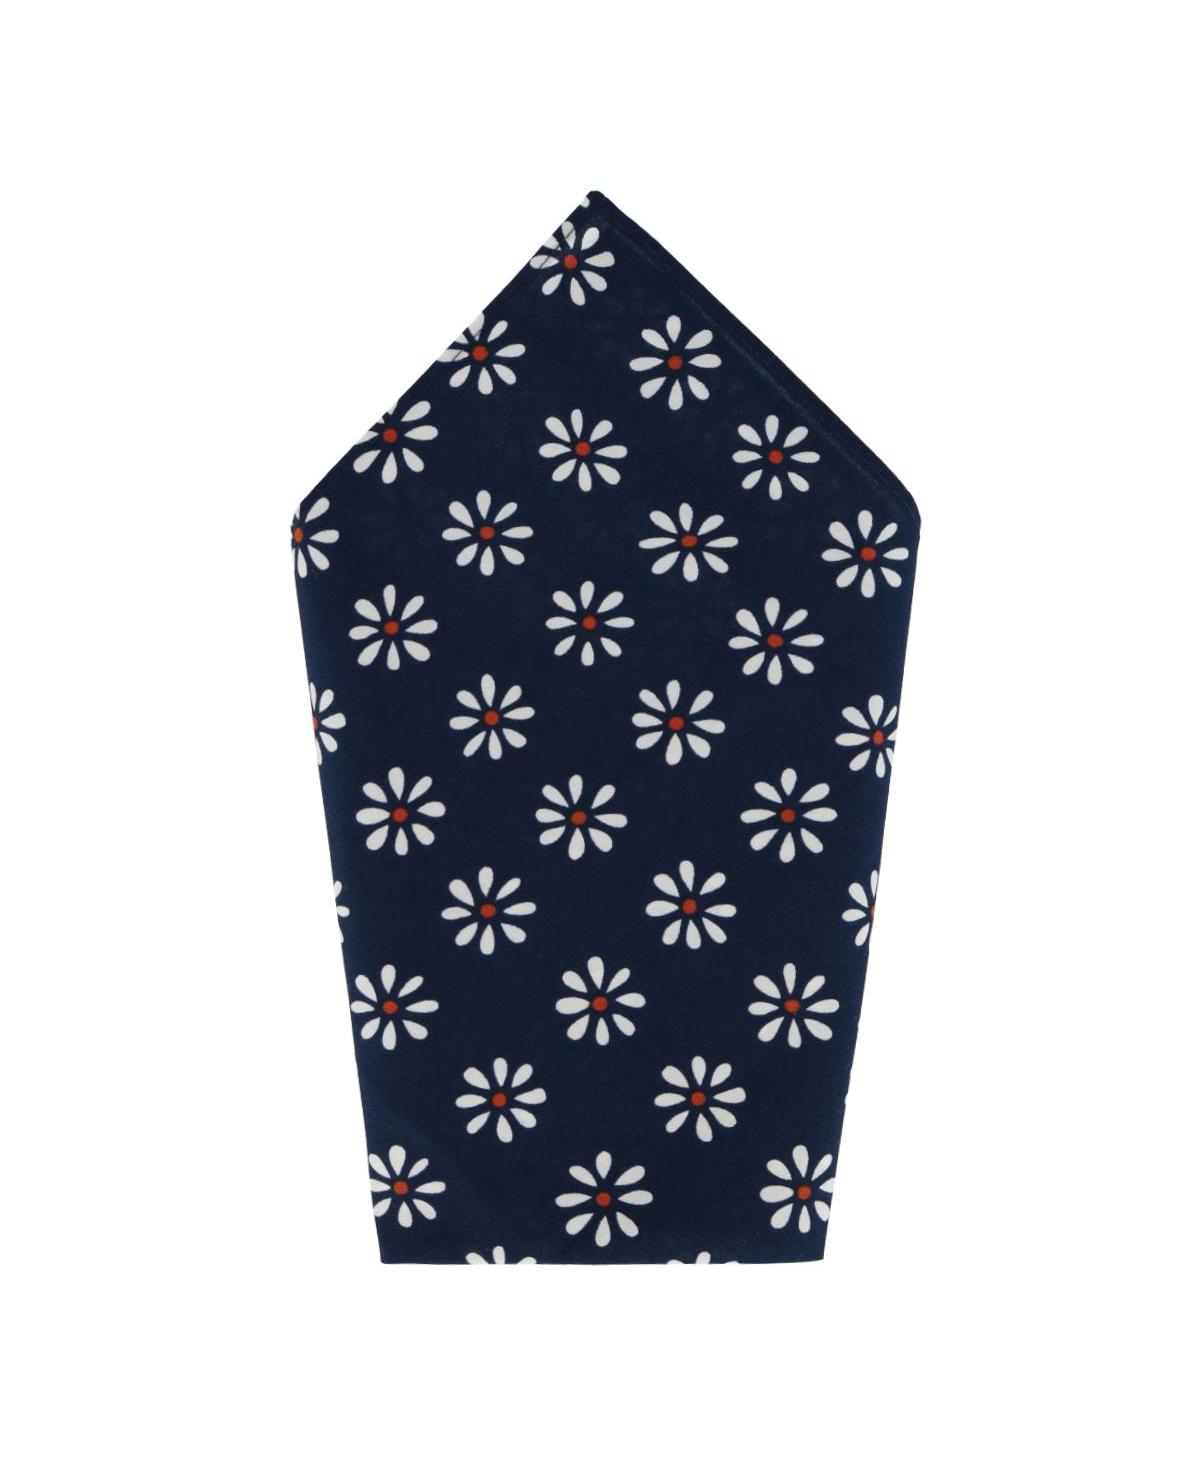 Mary's Rose Daisy Cotton Handkerchief (Single) - Navy